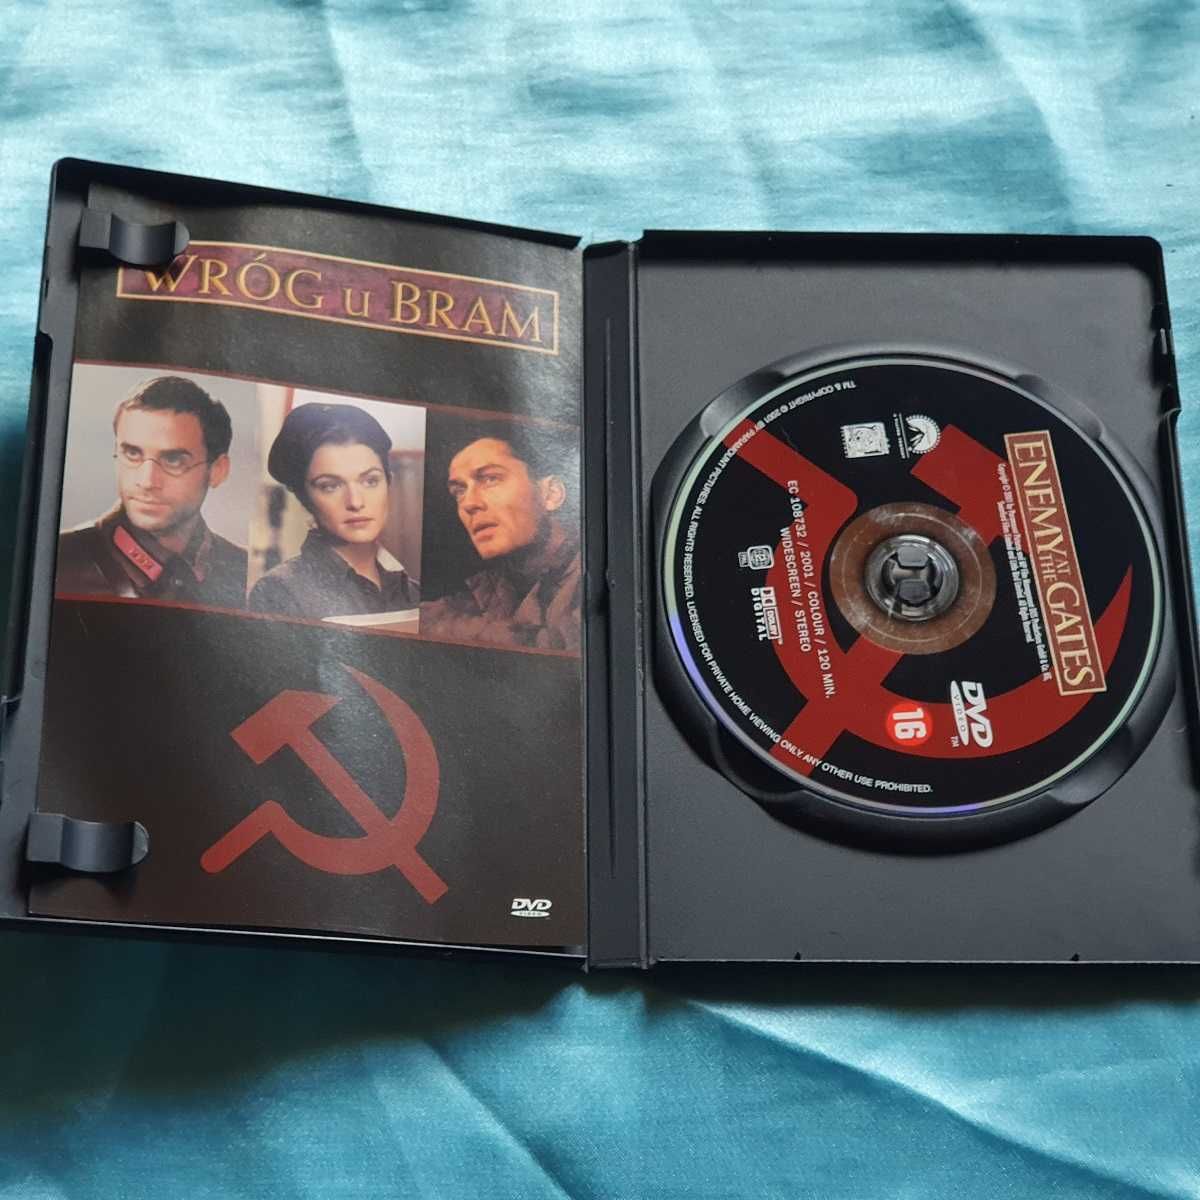 Wróg u bram (2001)  DVD